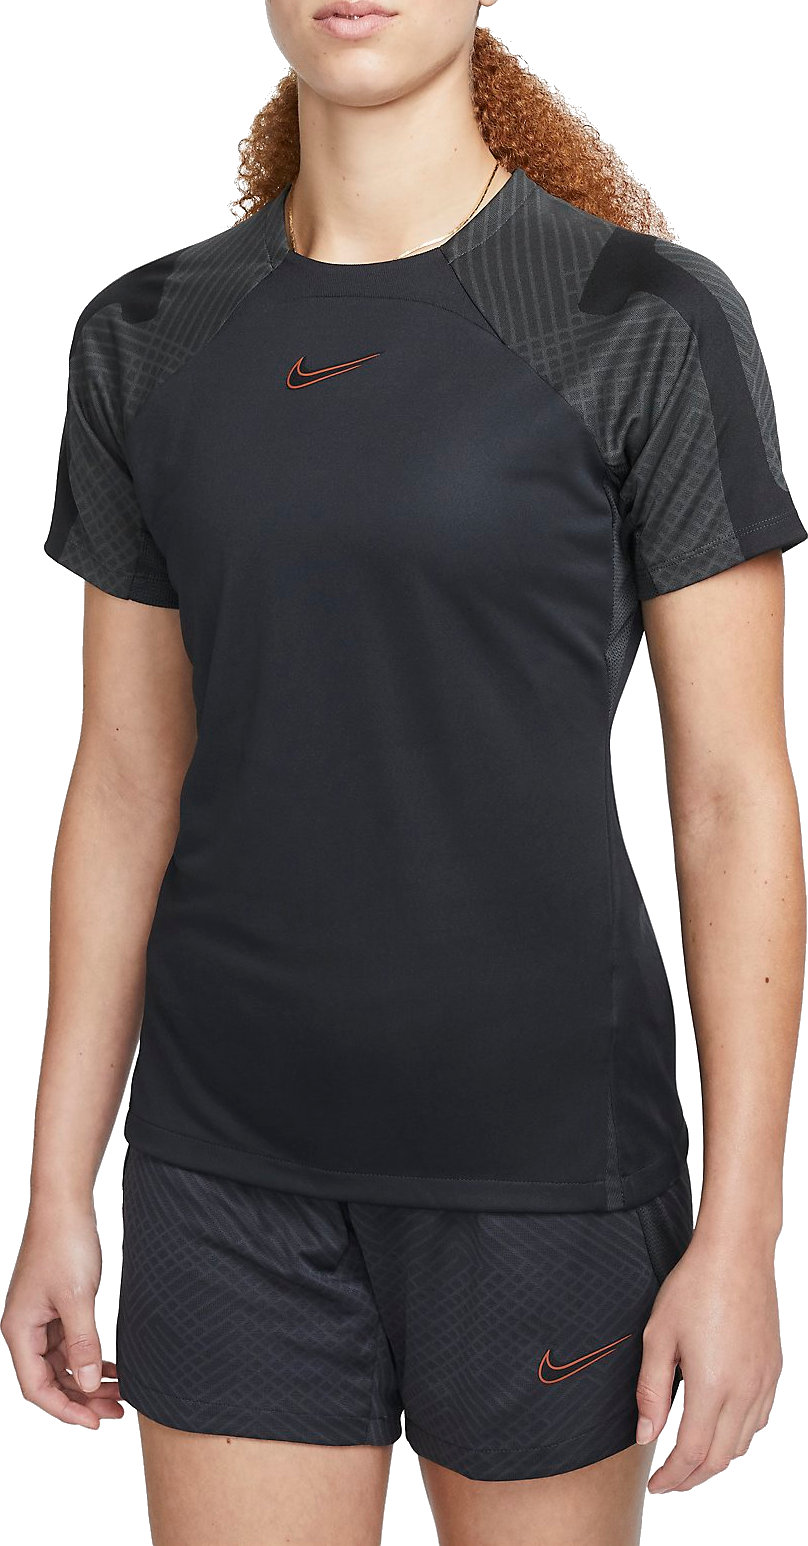 Nike Strike T-Shirt Womens